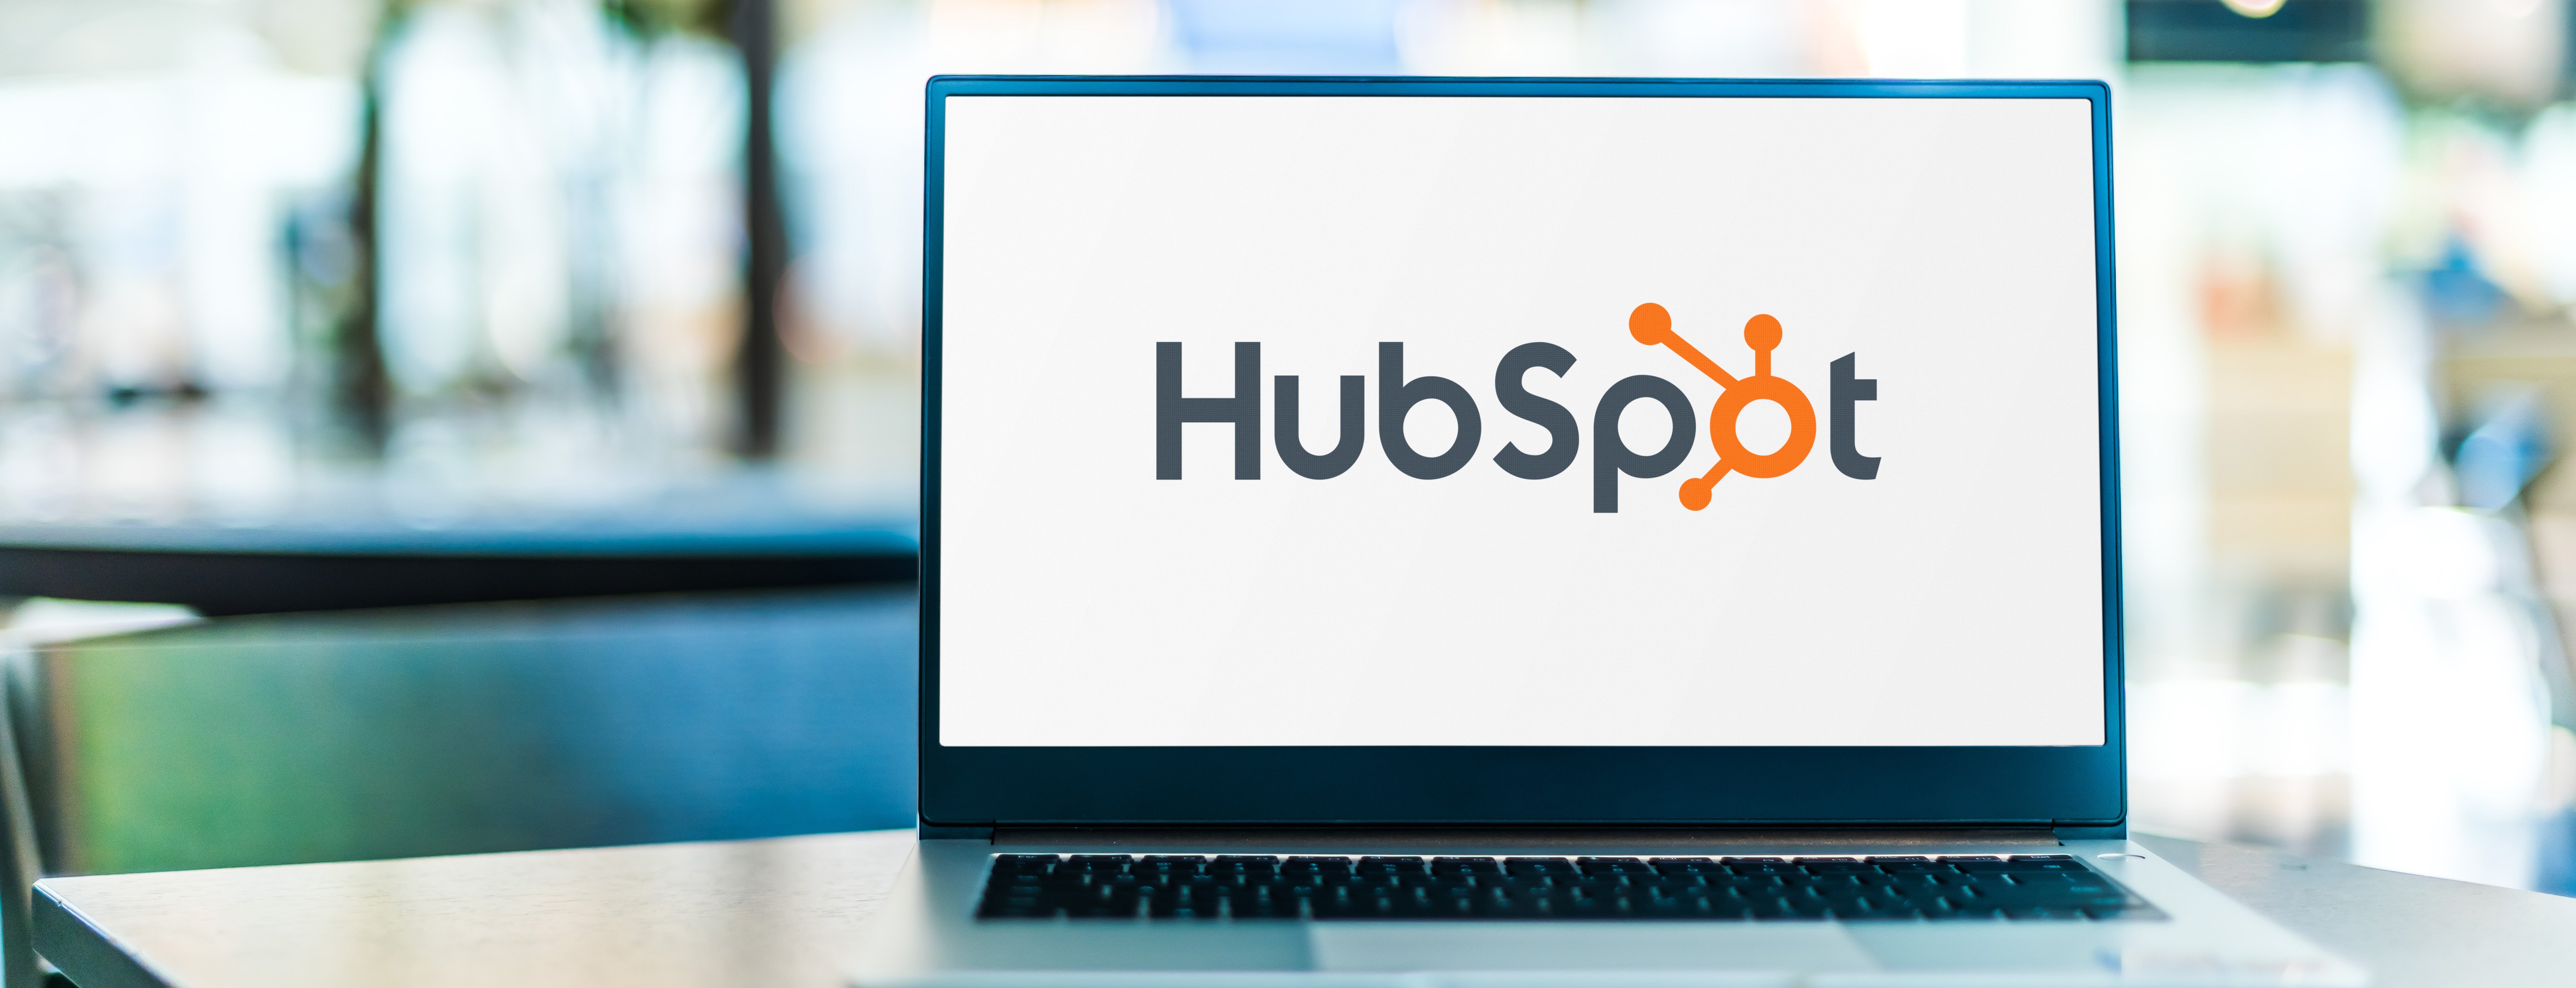 hubspot web development how to